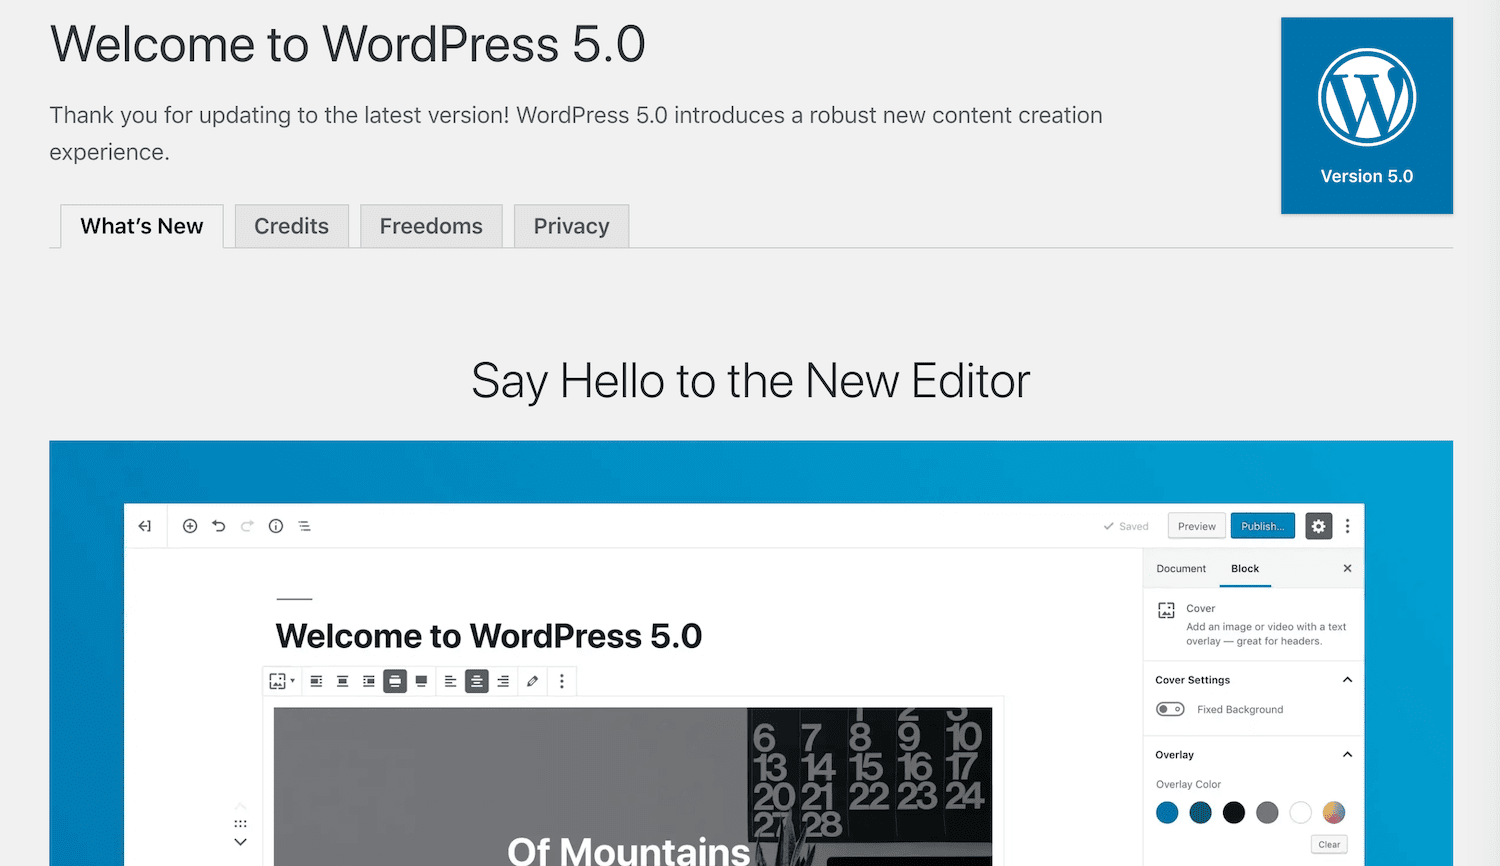 Le message de bienvenue de WordPress 5.0